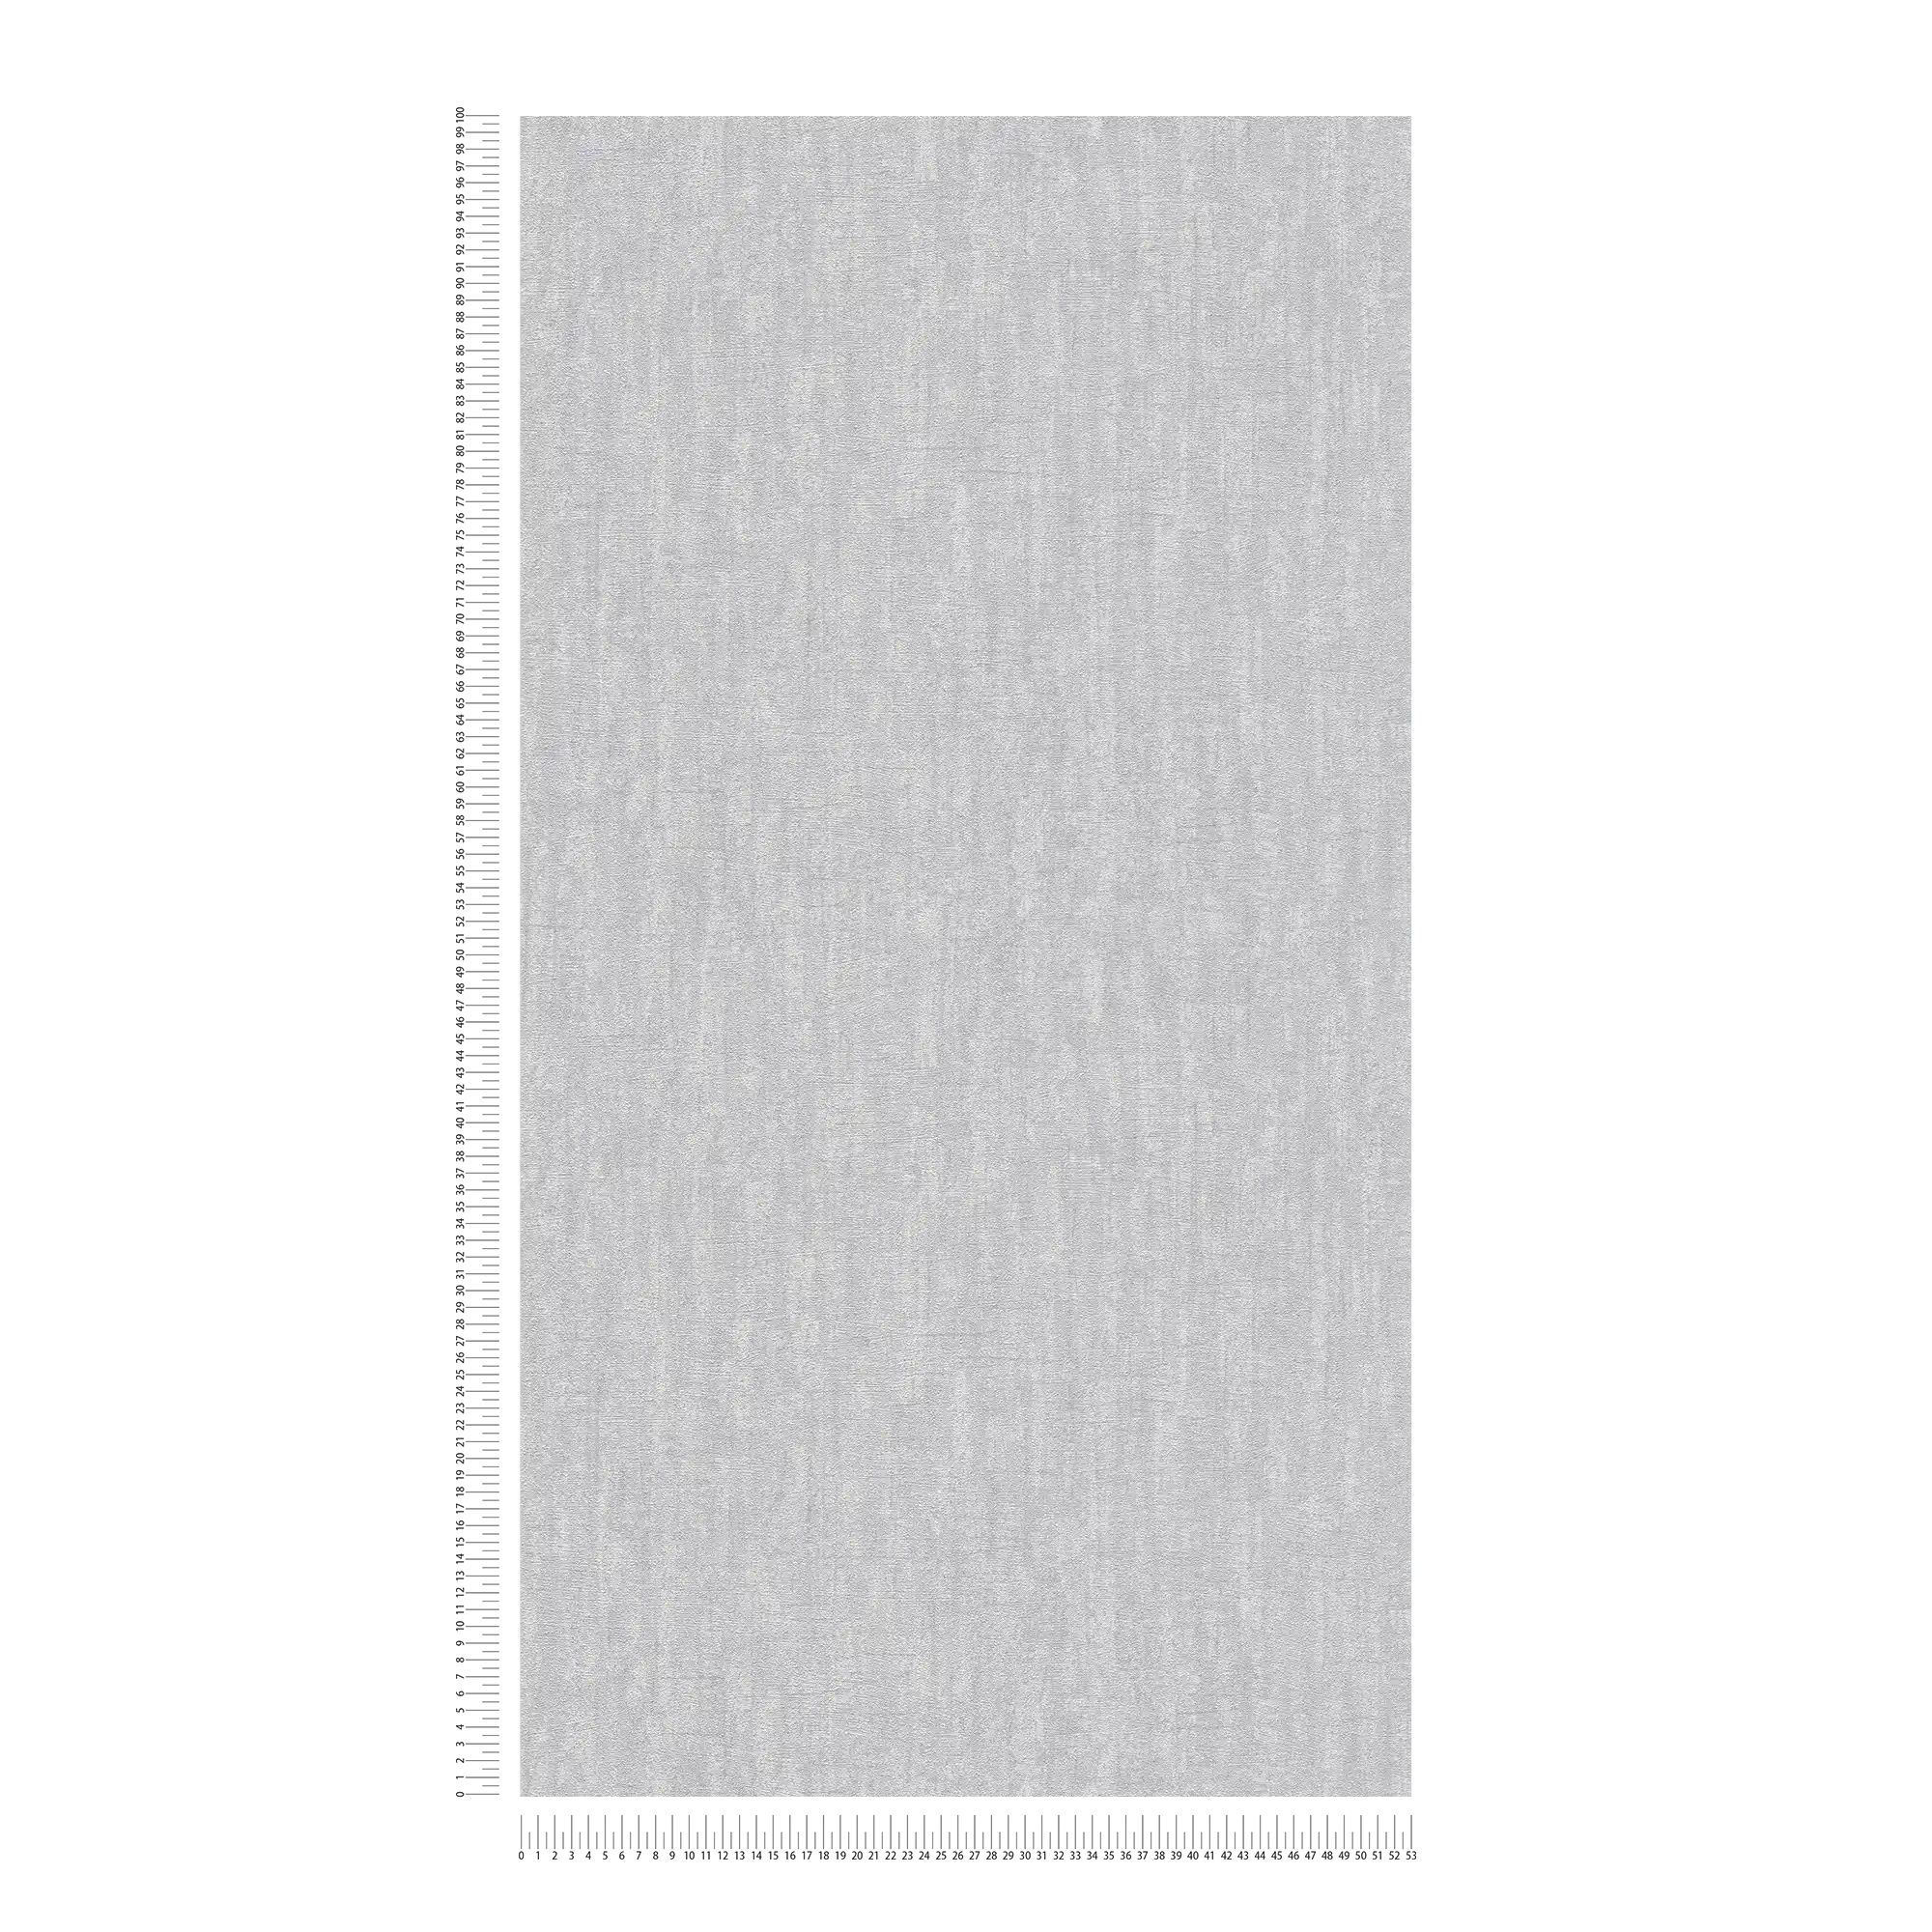             Papel pintado gris claro con textura, brillante - Gris
        